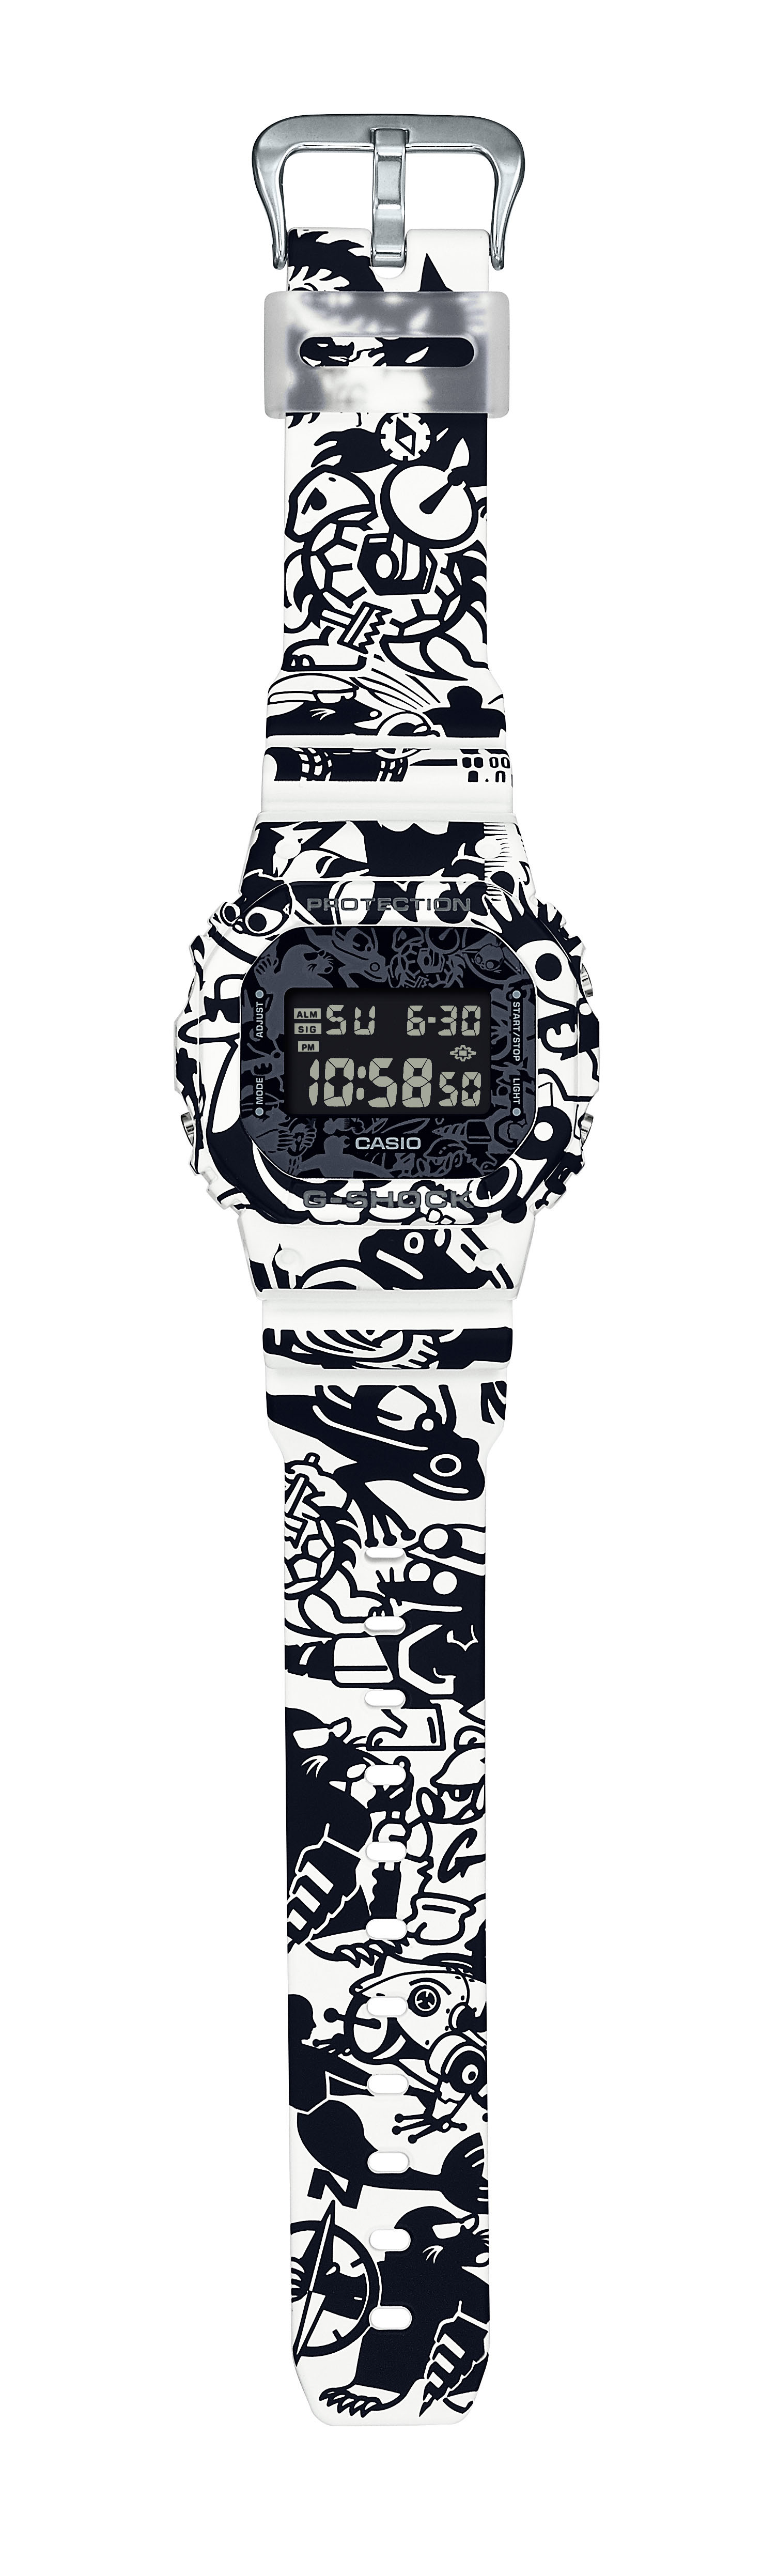 時尚手錶】G-SHOCK UNIVERSE DW-5600GU-7 經典玩味迷彩設計| 夏日型格 